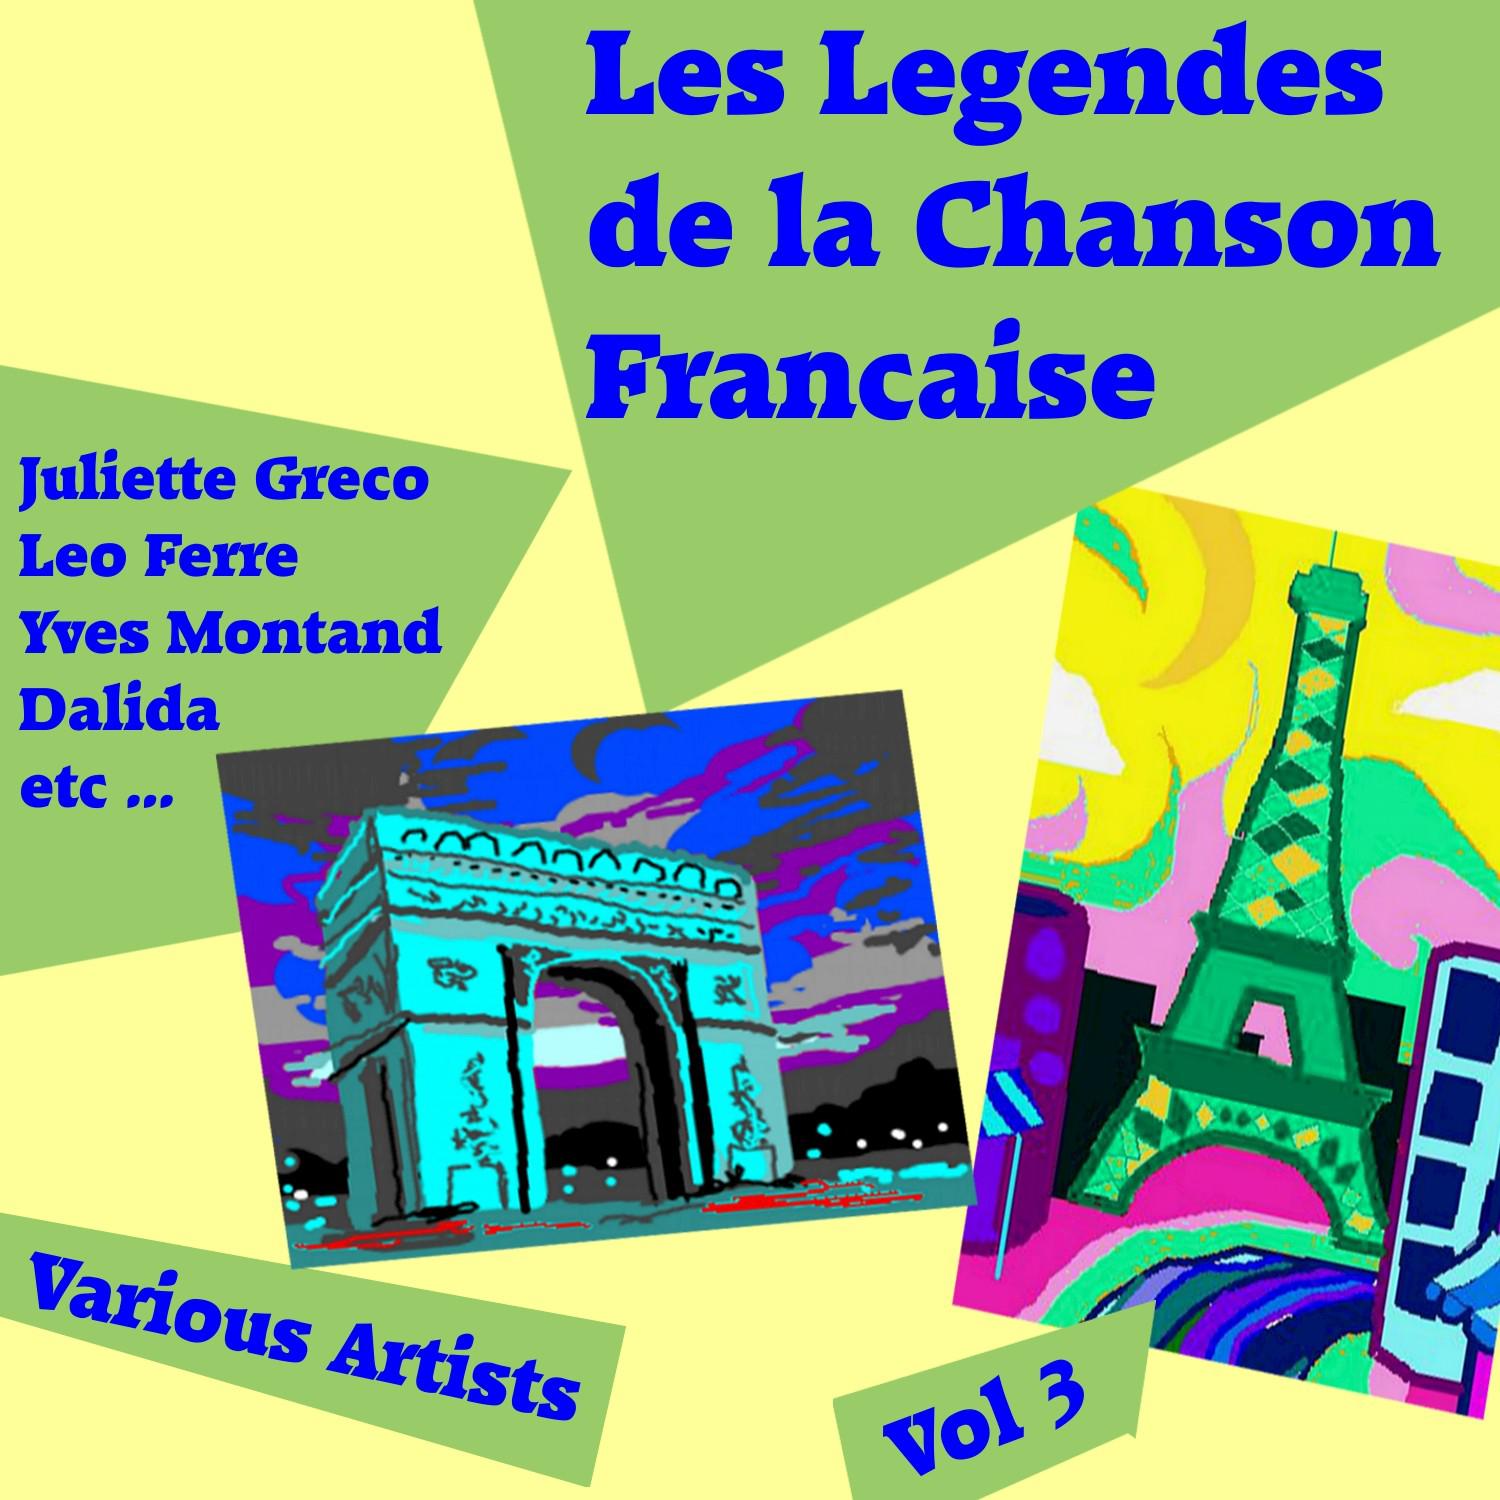 Les Legendes de la Chanson Francaise, Vol. 3